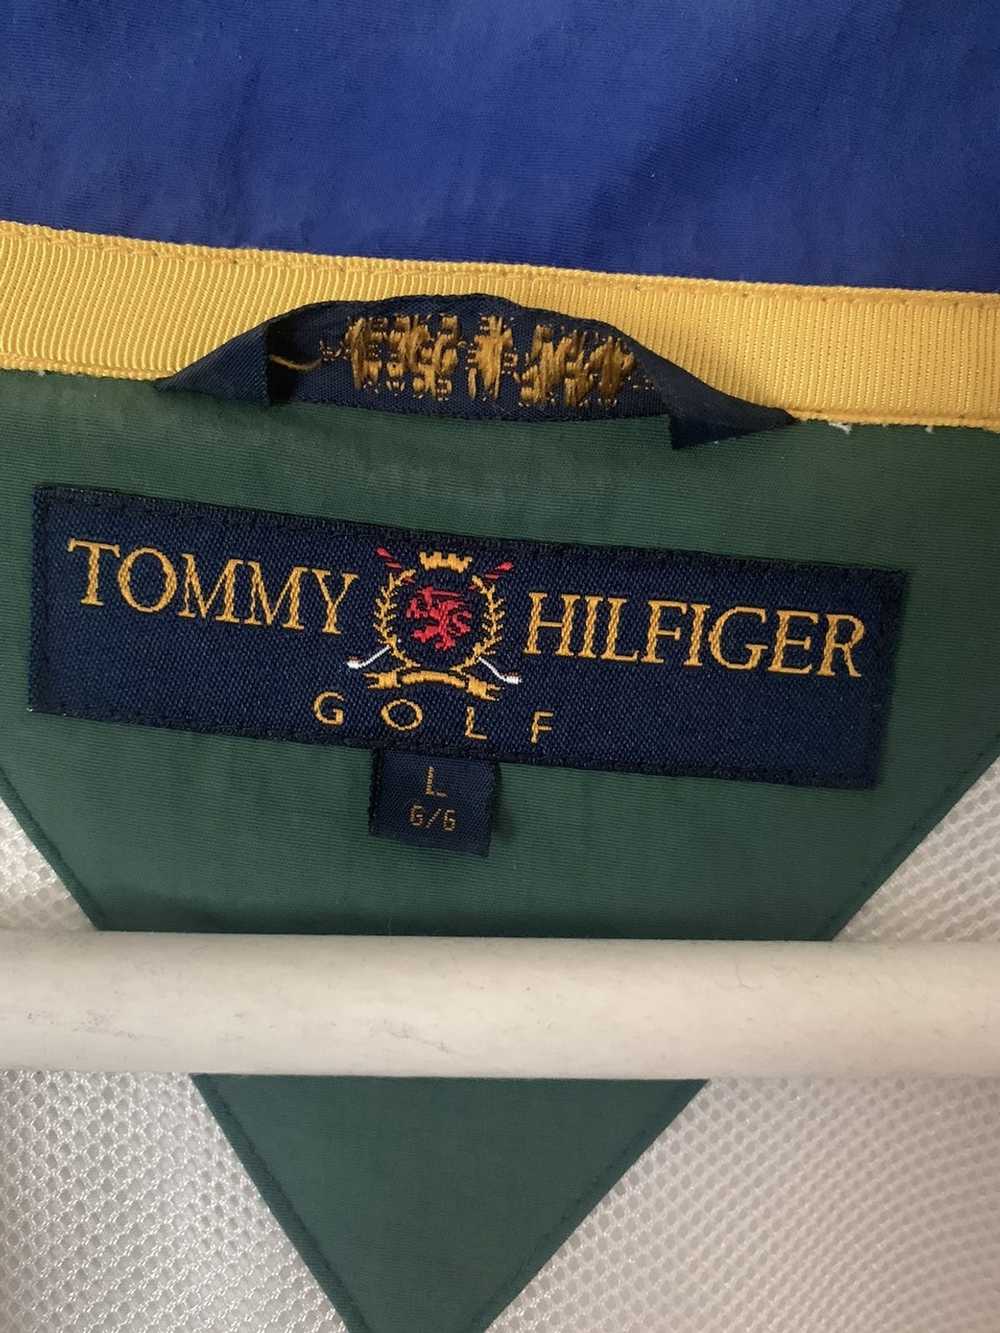 Tommy Hilfiger Vintage Tommy Hilfiger Jacket - image 4